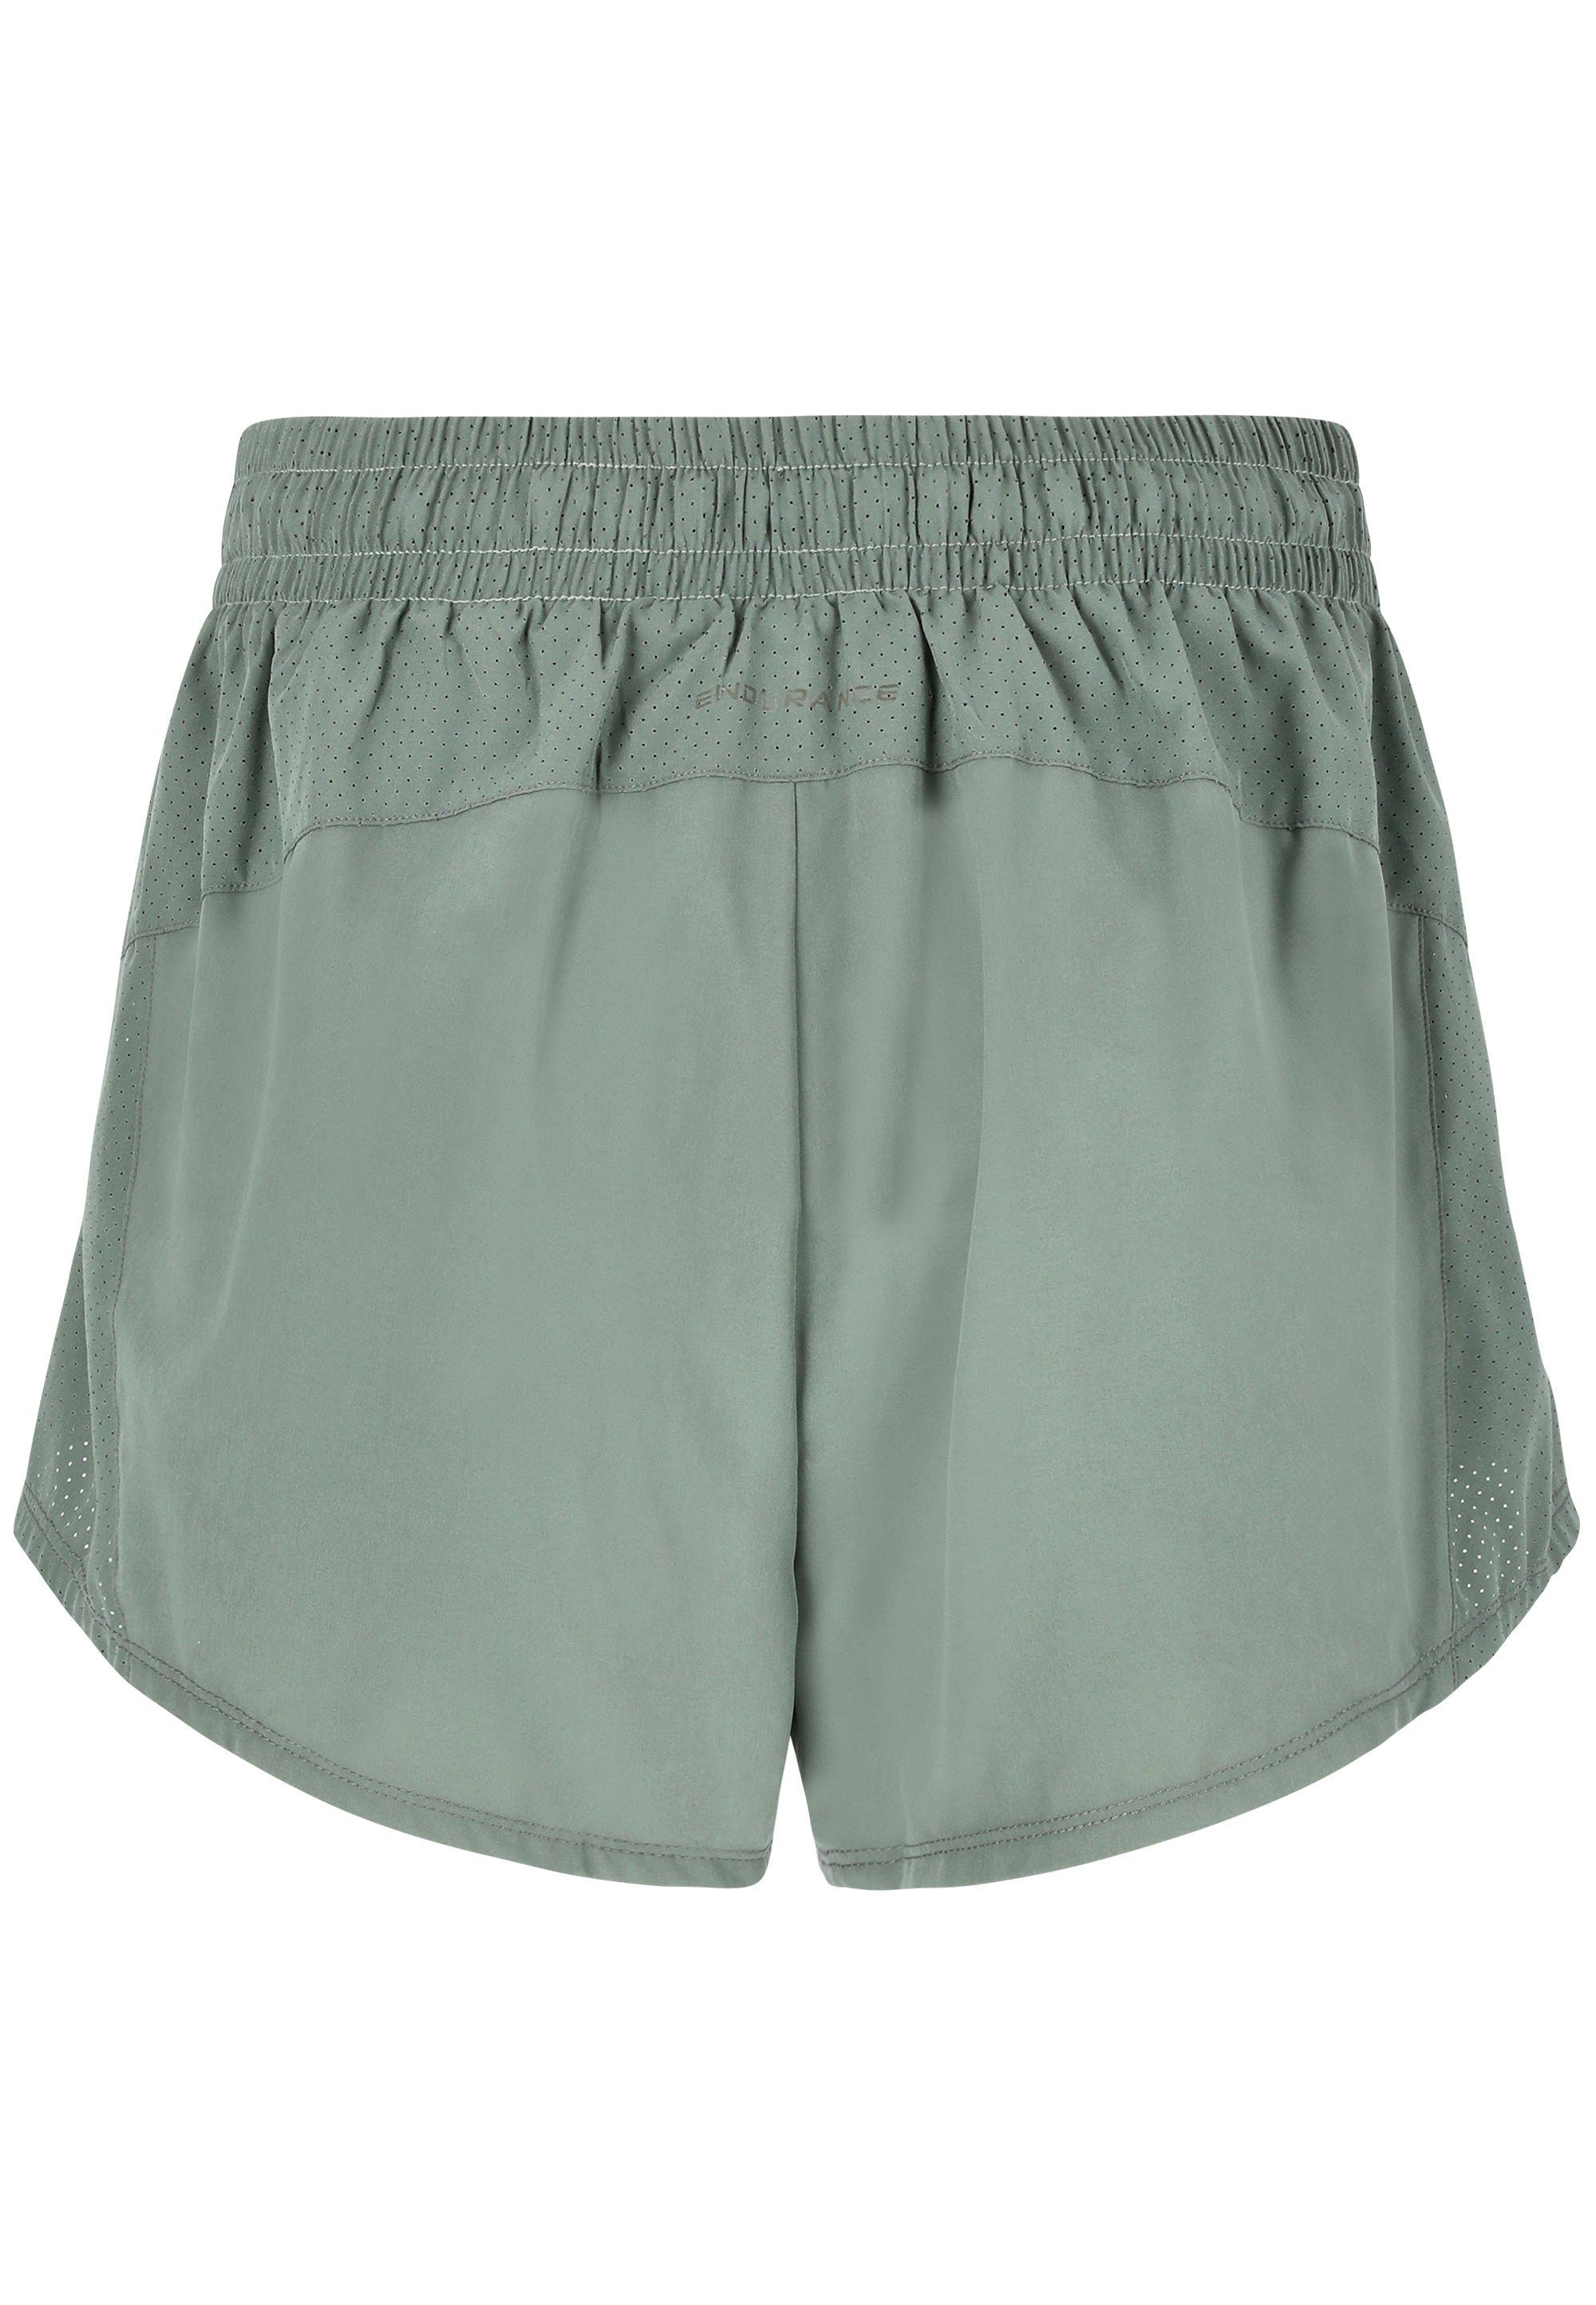 ENDURANCE Shorts Eslaire dunkelgrün praktischen mit Taschen